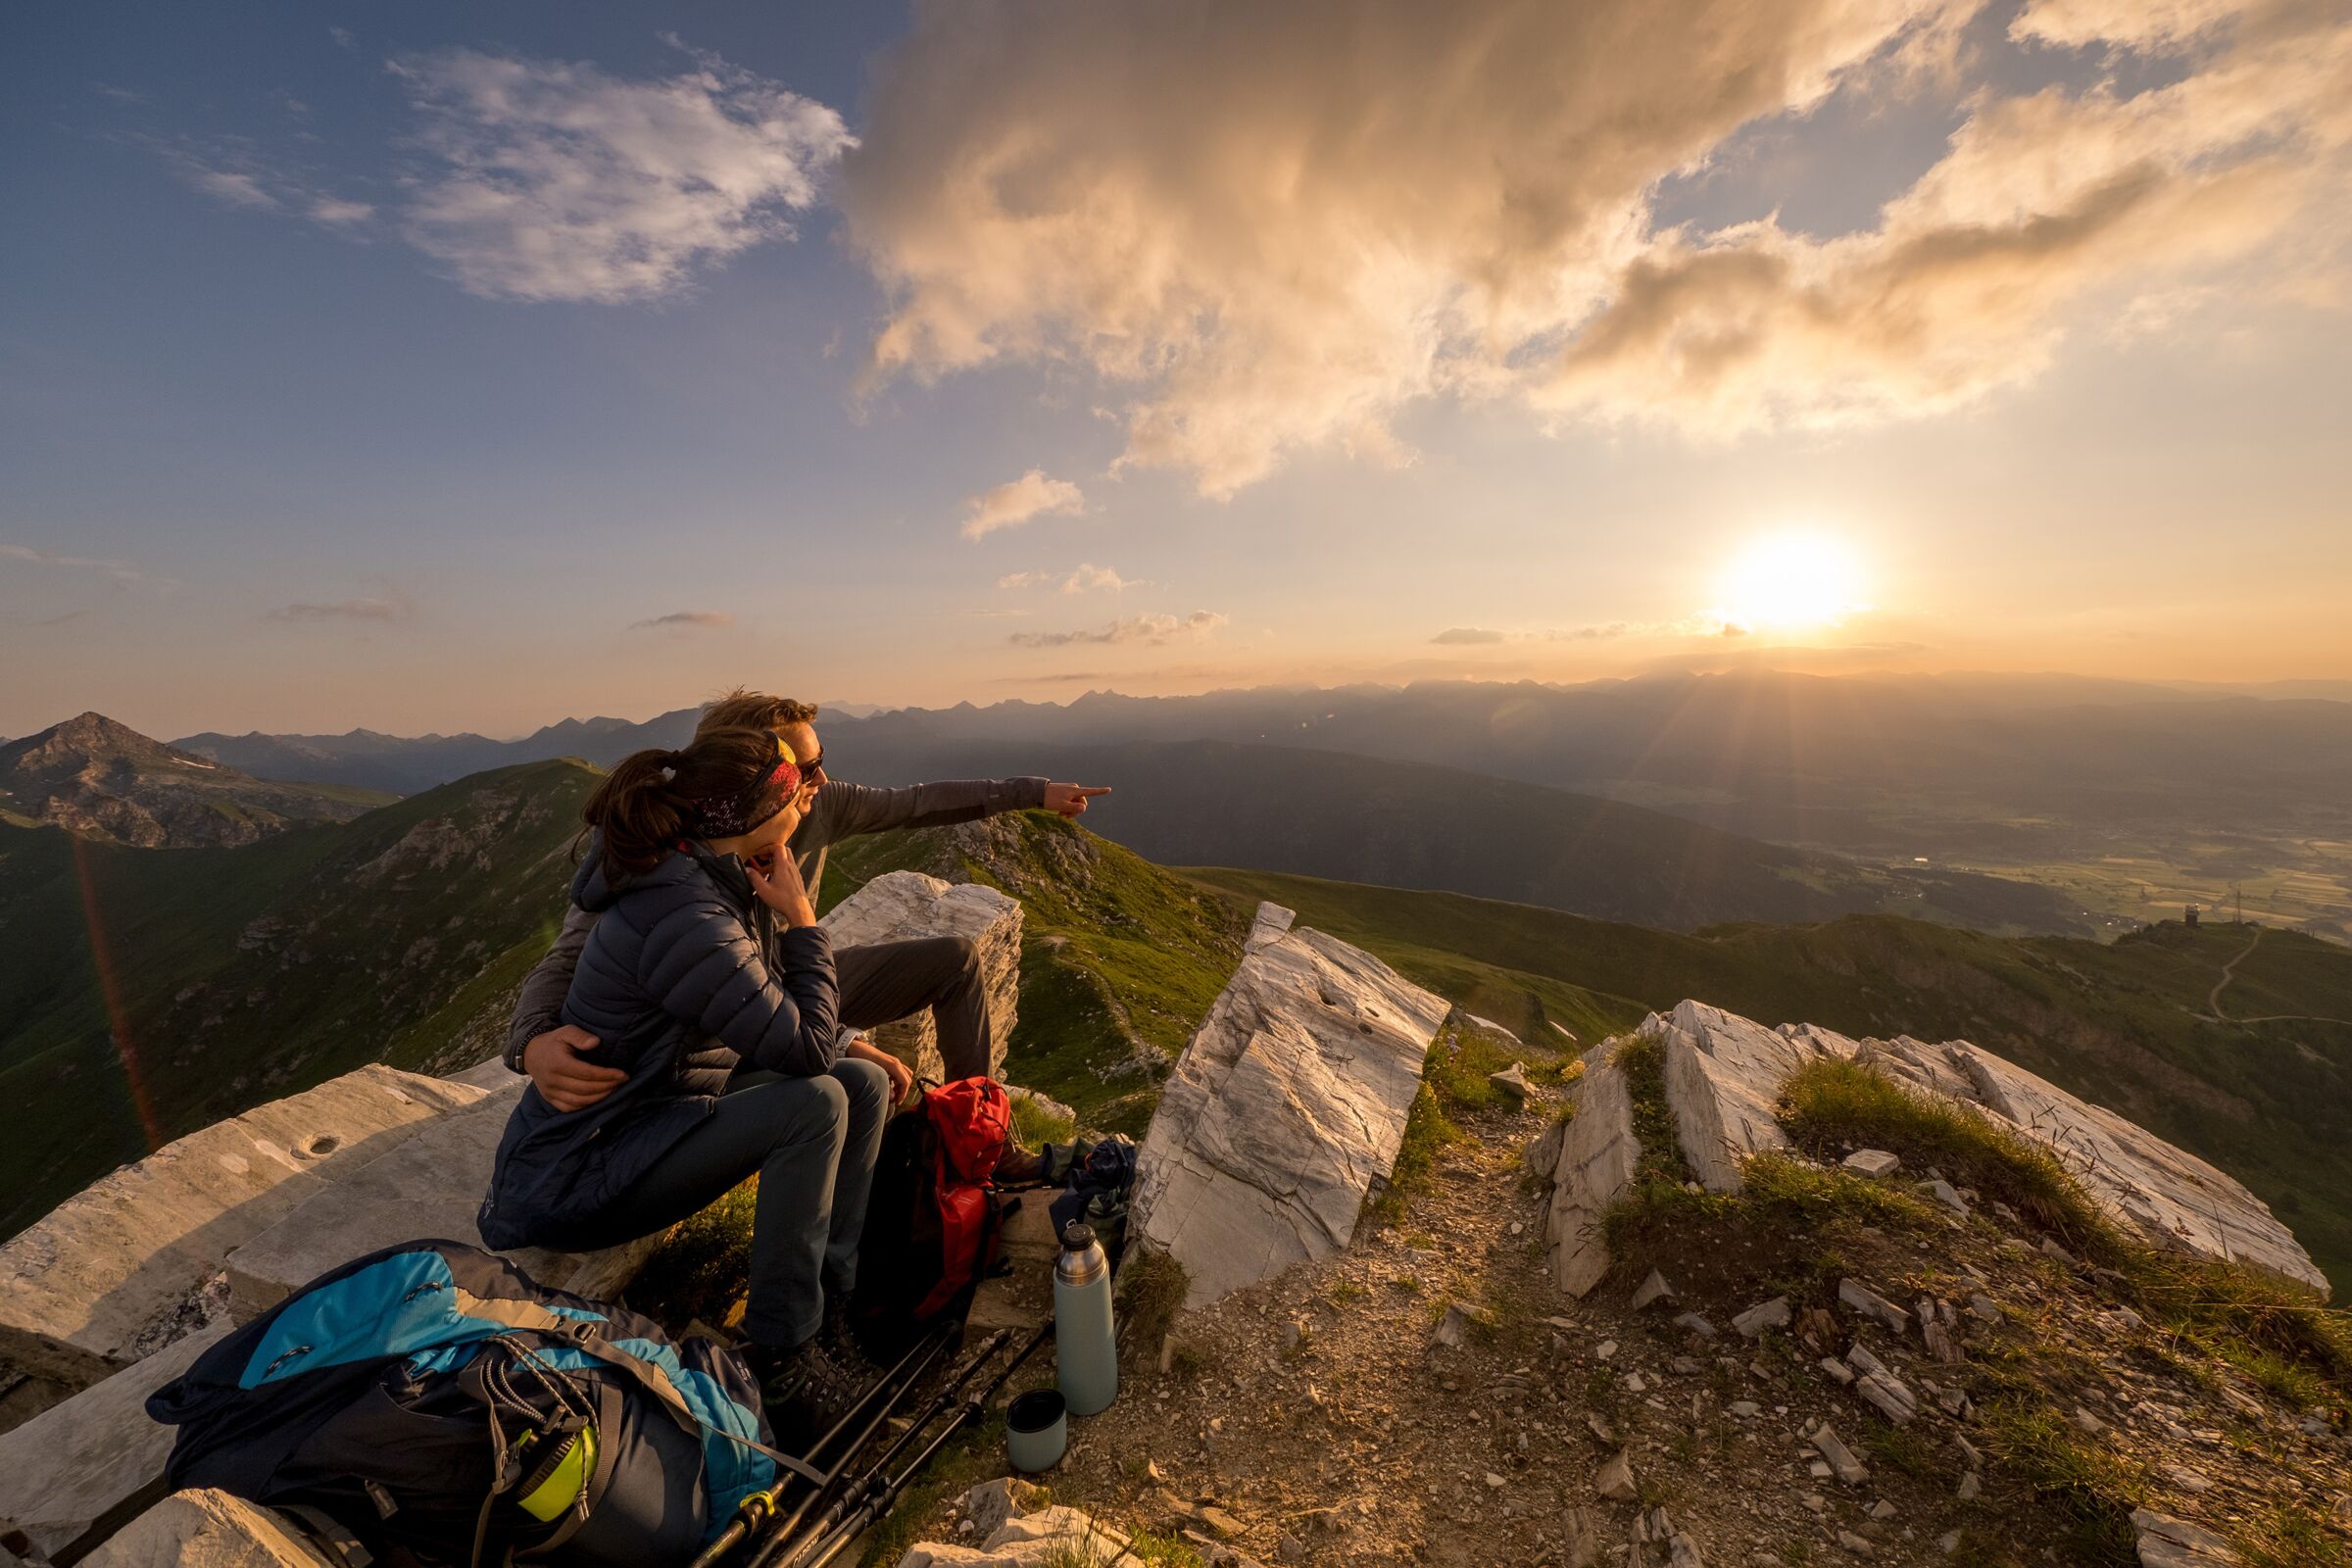 Bergsteiger-Paar sitzt auf dem Berggipfel des Speierecks, die Belohnung dieser Wanderung ist ein wunderschöner Sonnenaufgang im Lungau